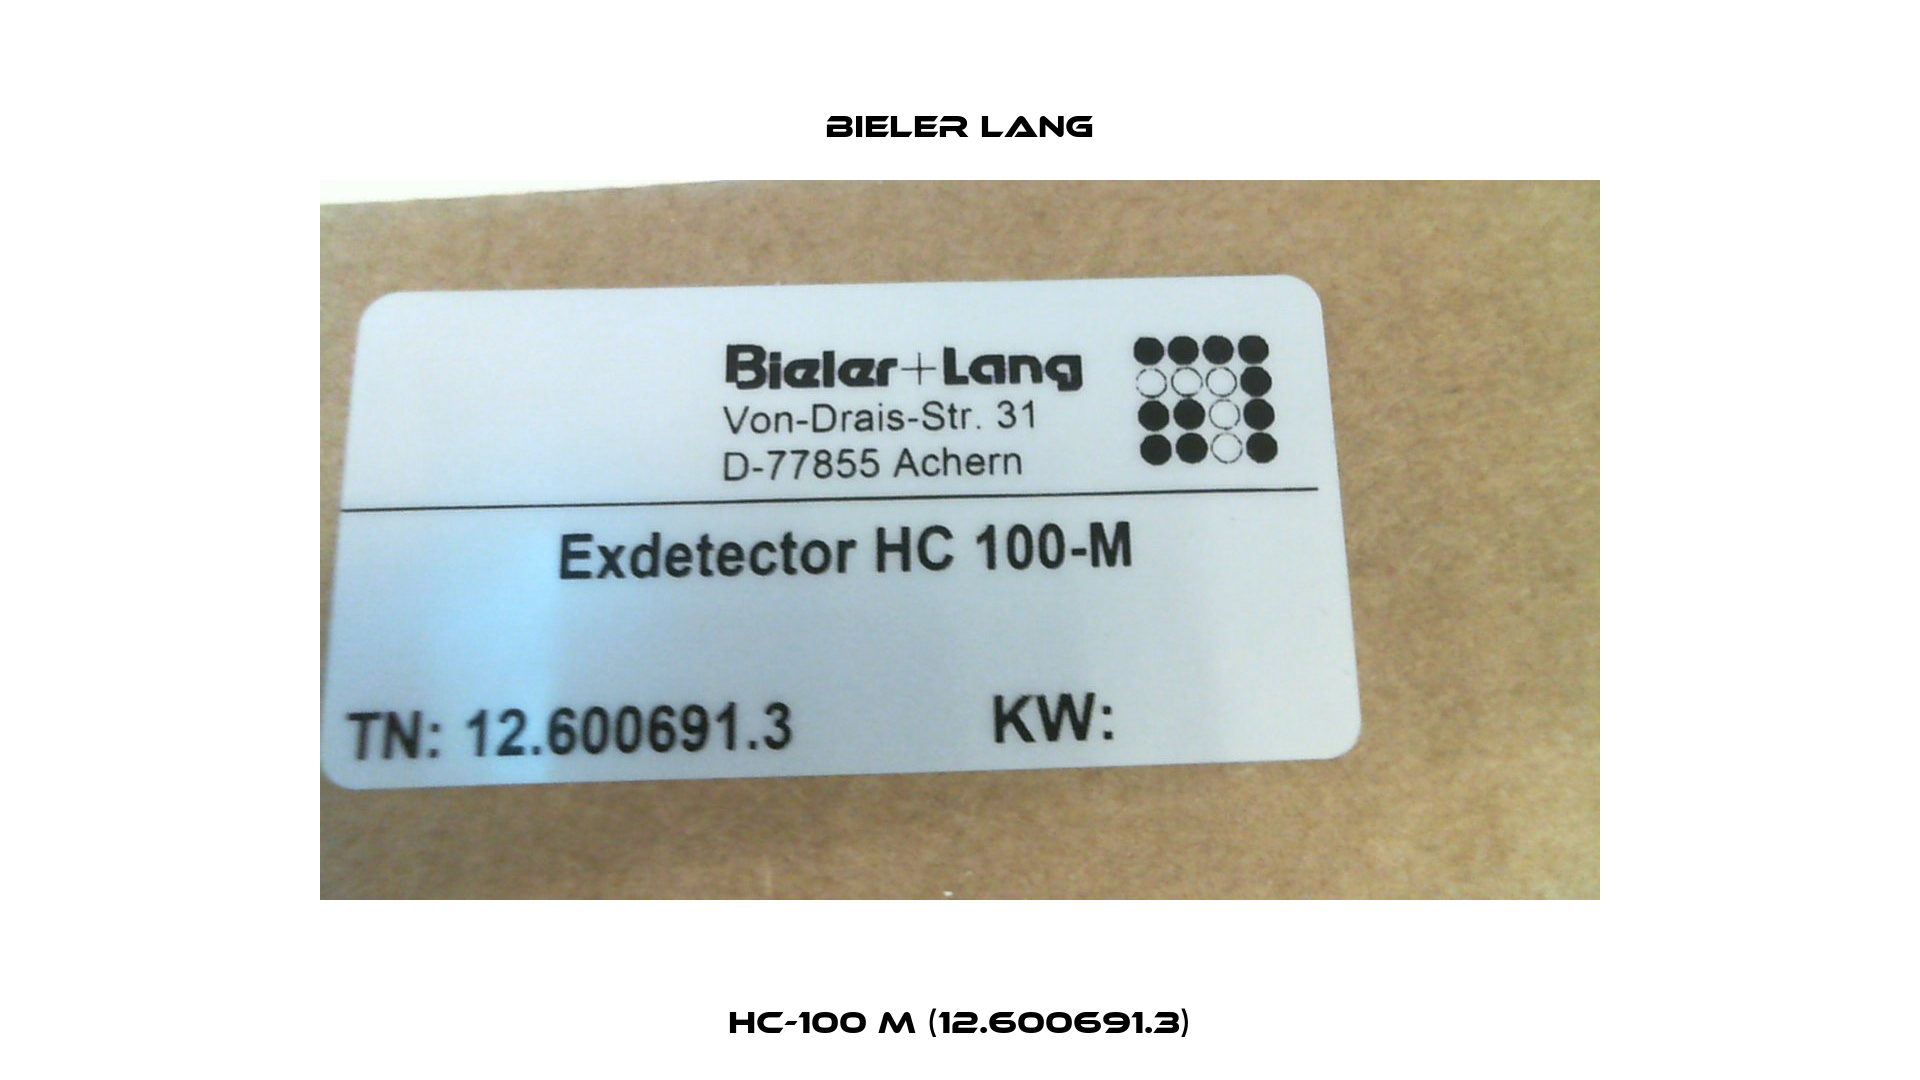 HC-100 M (12.600691.3) Bieler Lang